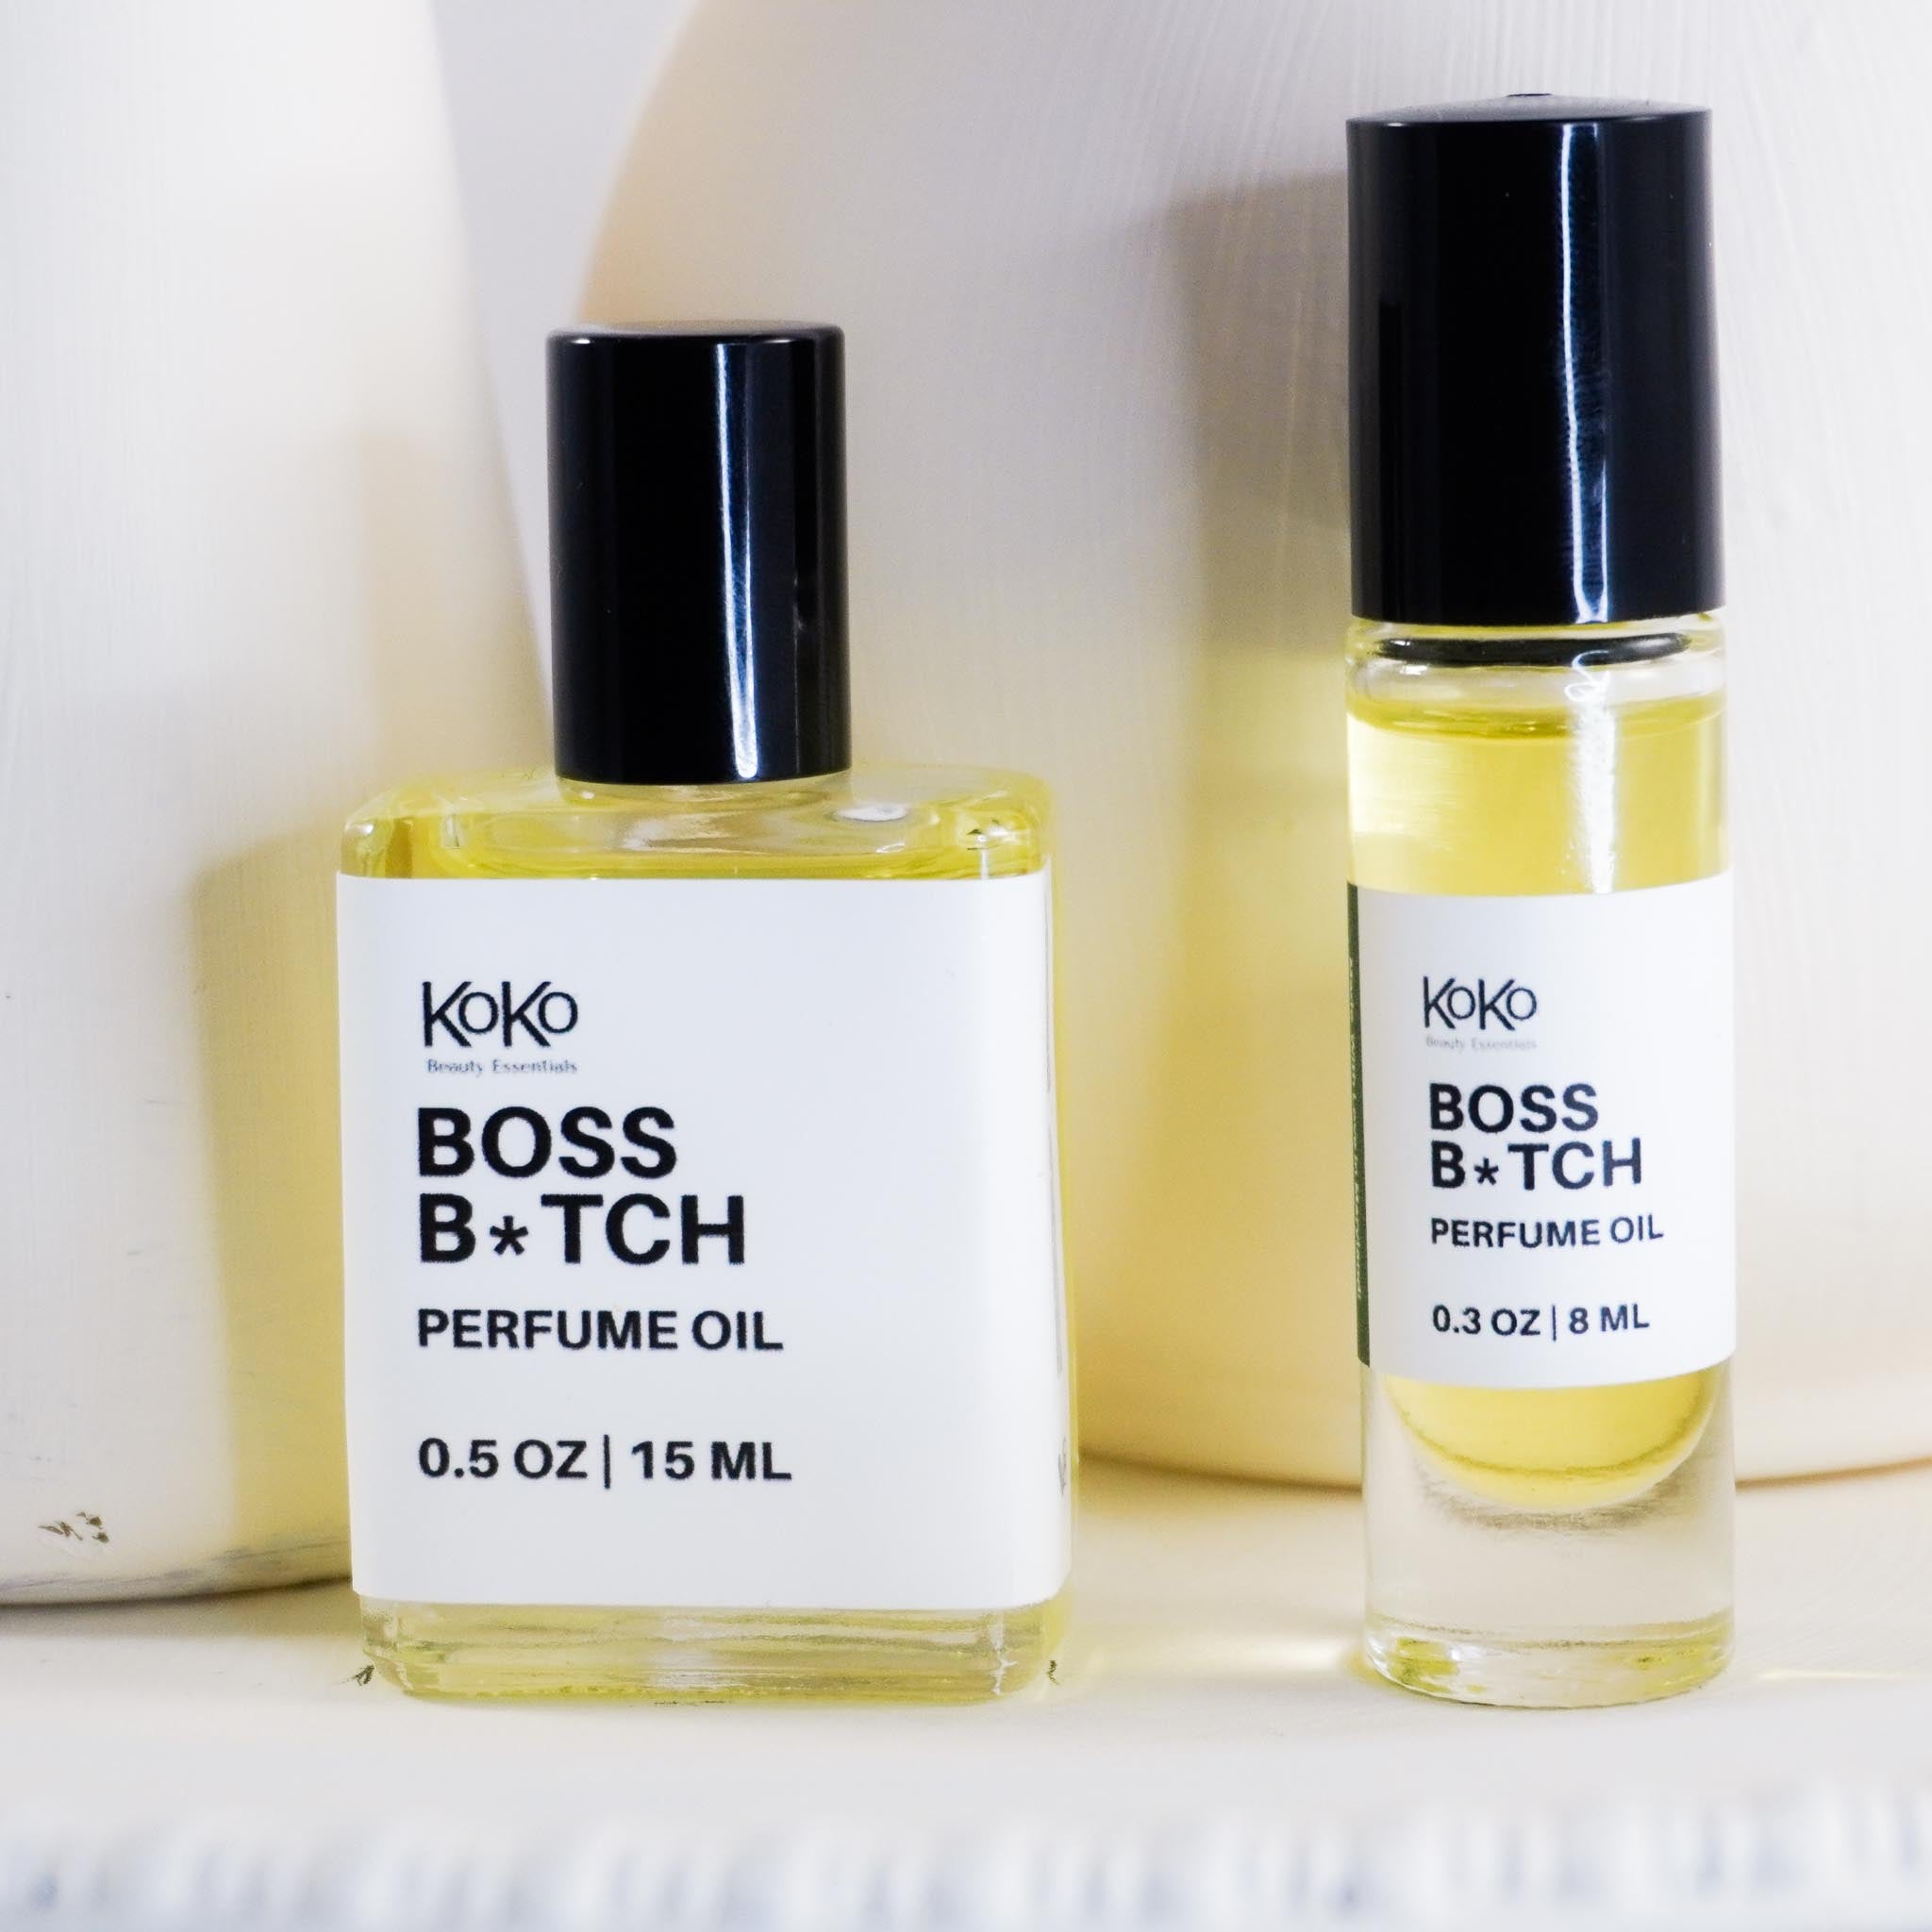 Boss B*tch Perfume Oil